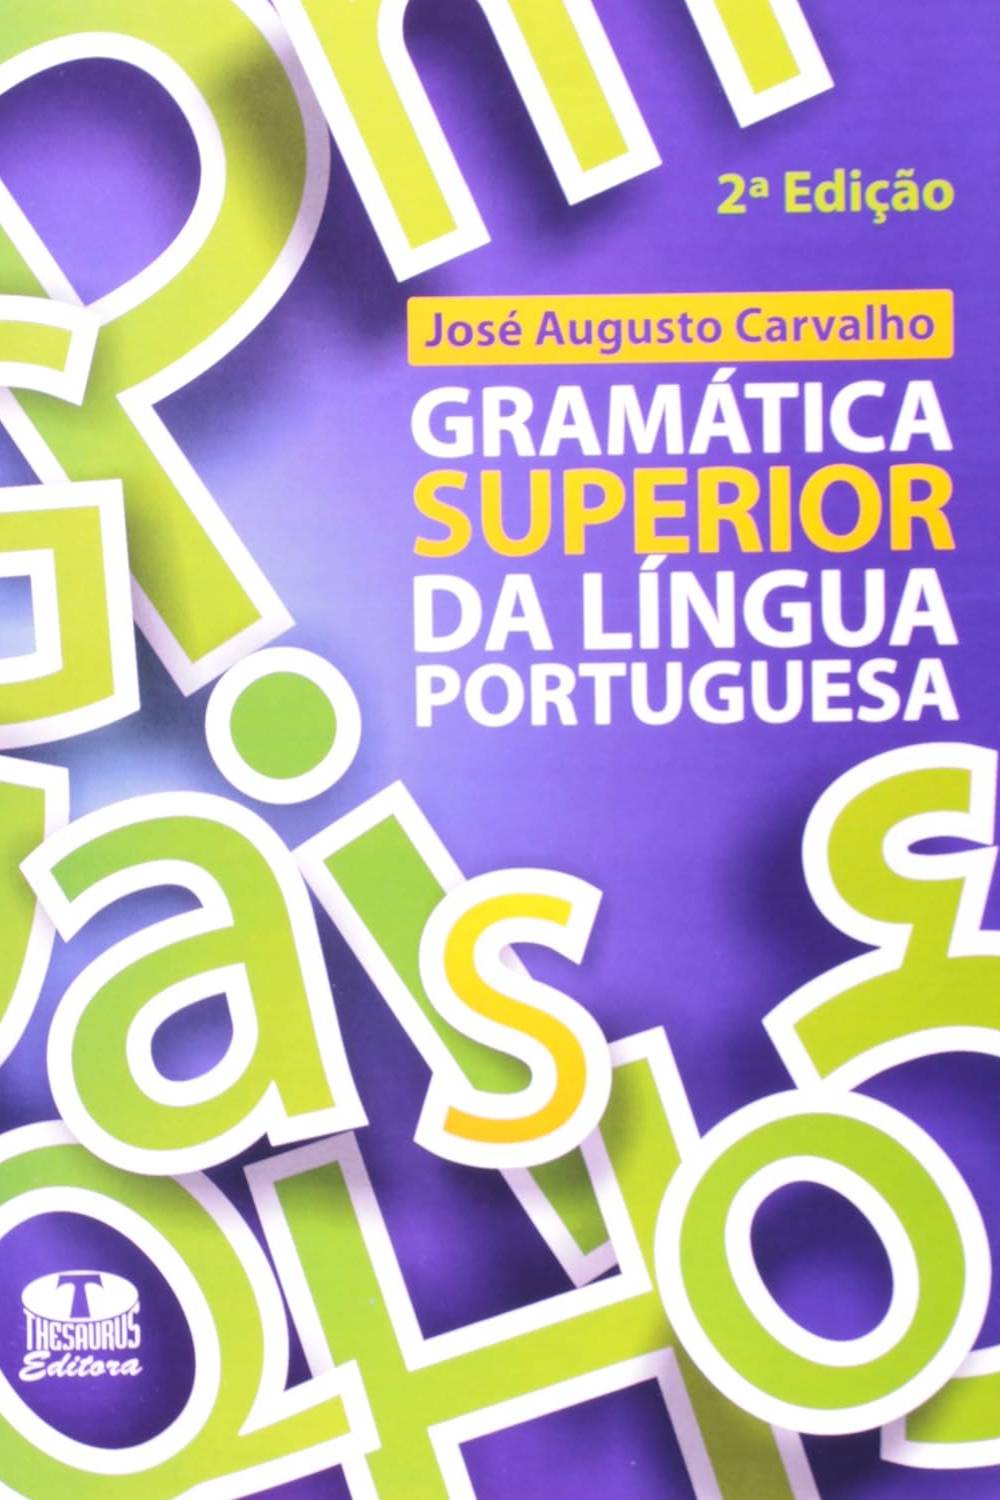 dicionario lingua portuguesa